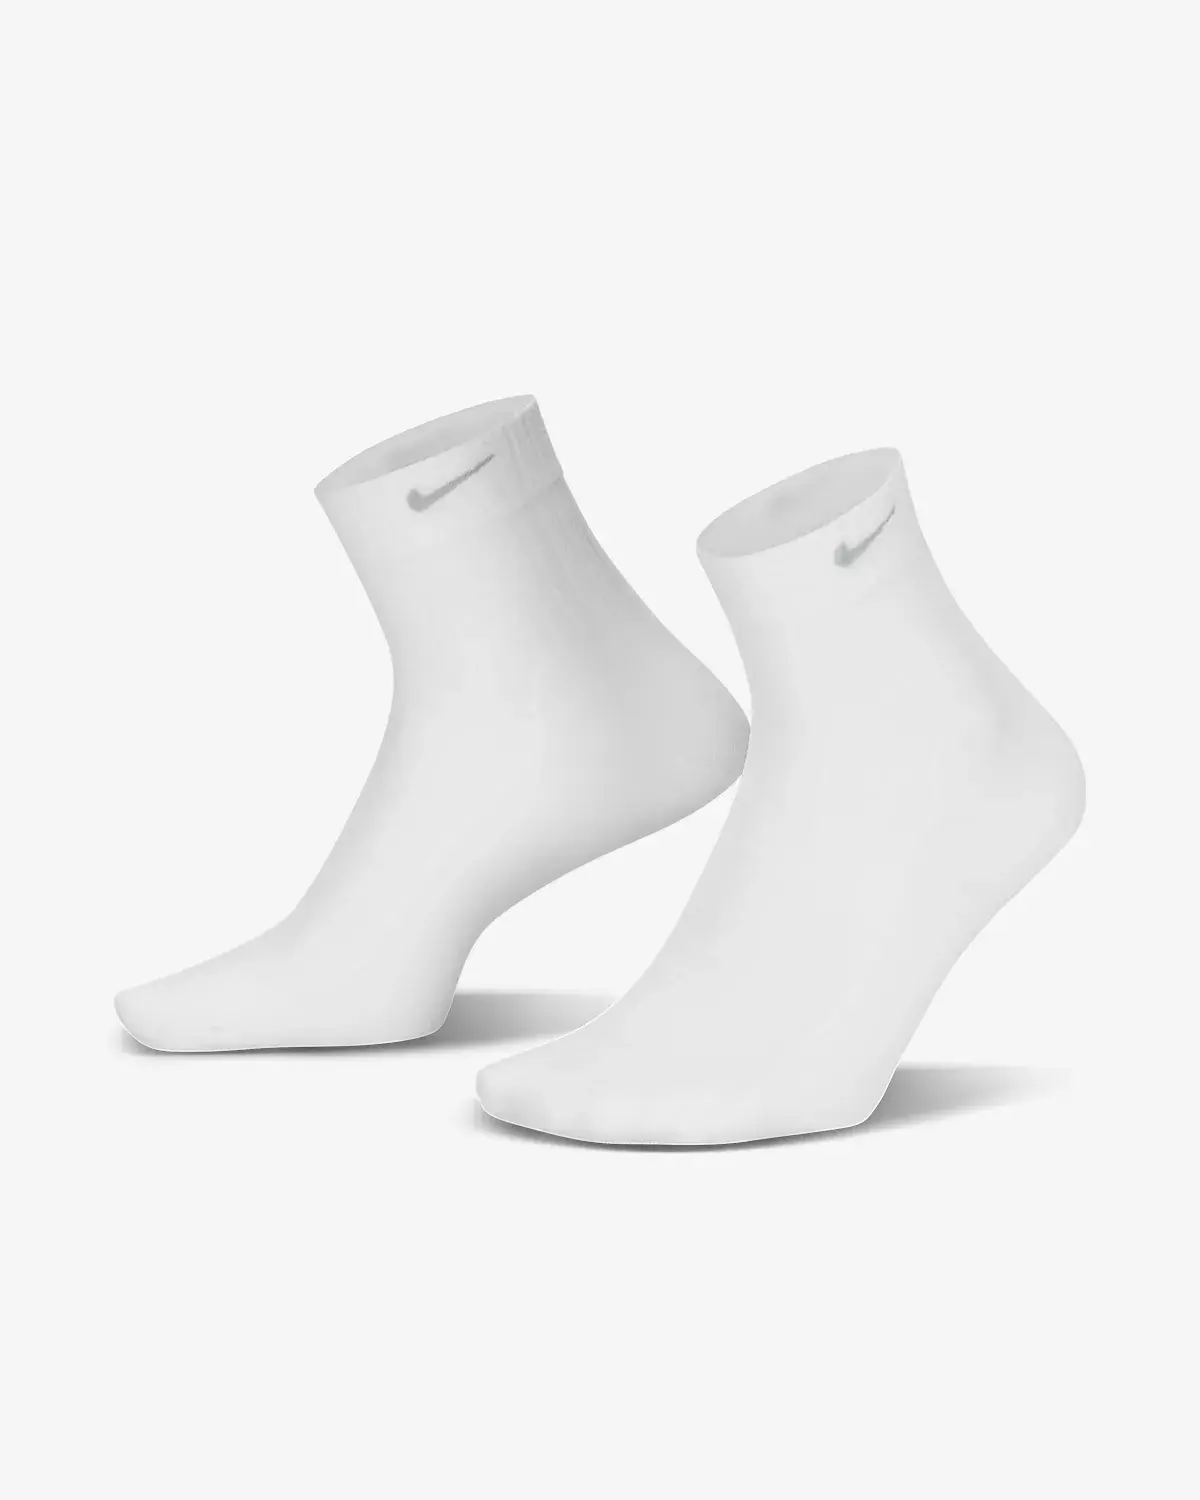 Nike Socks. 1